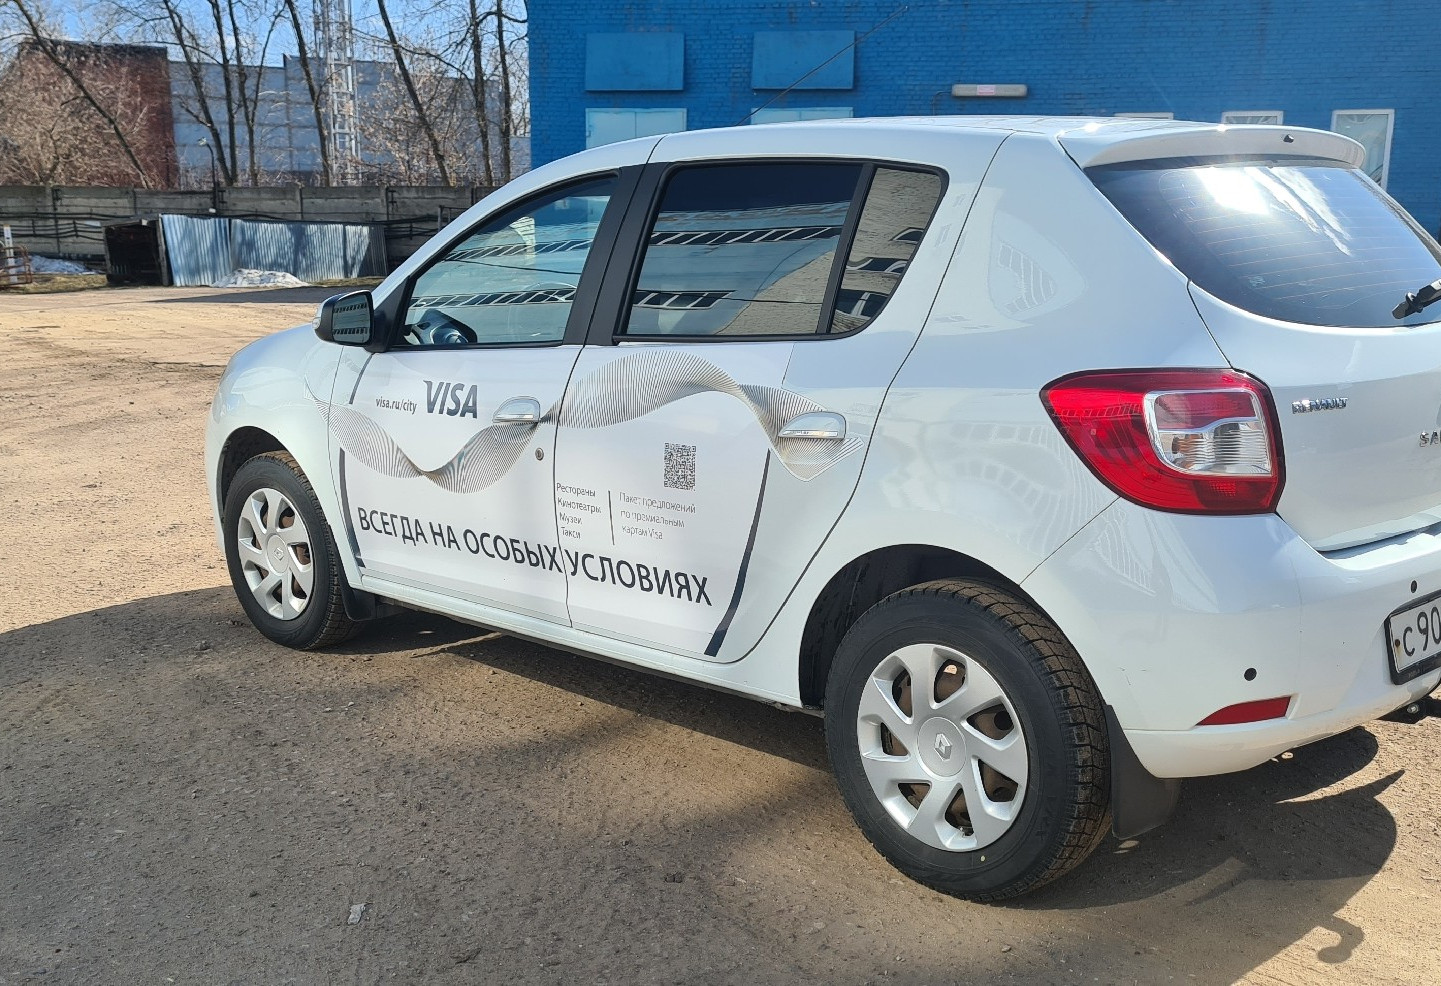 Аренда renault sandero эконом класса 2014 года в городе Москва от 880 руб./сутки, передний привод, двигатель: бензин, объем 1.6 литров, ОСАГО (Впишу в полис), без водителя, недорого - RentRide